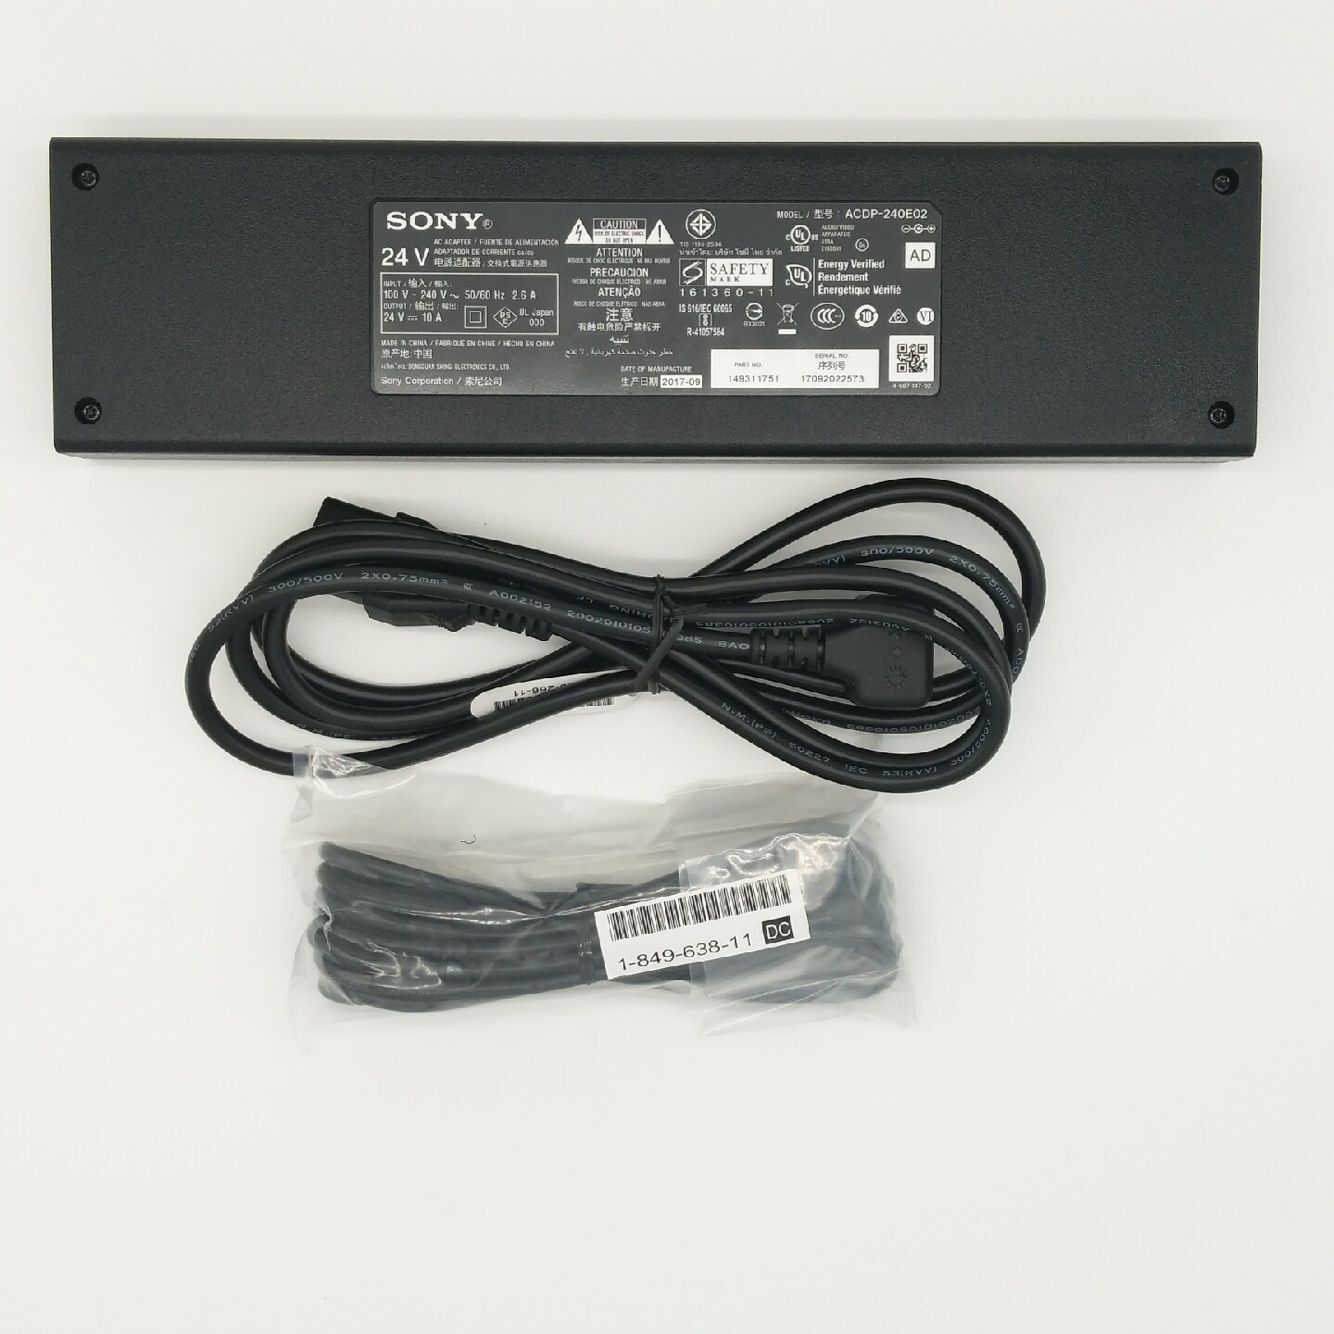 Original 240W Sony acdp-240e02 1-493-117-15 AC Adaptor